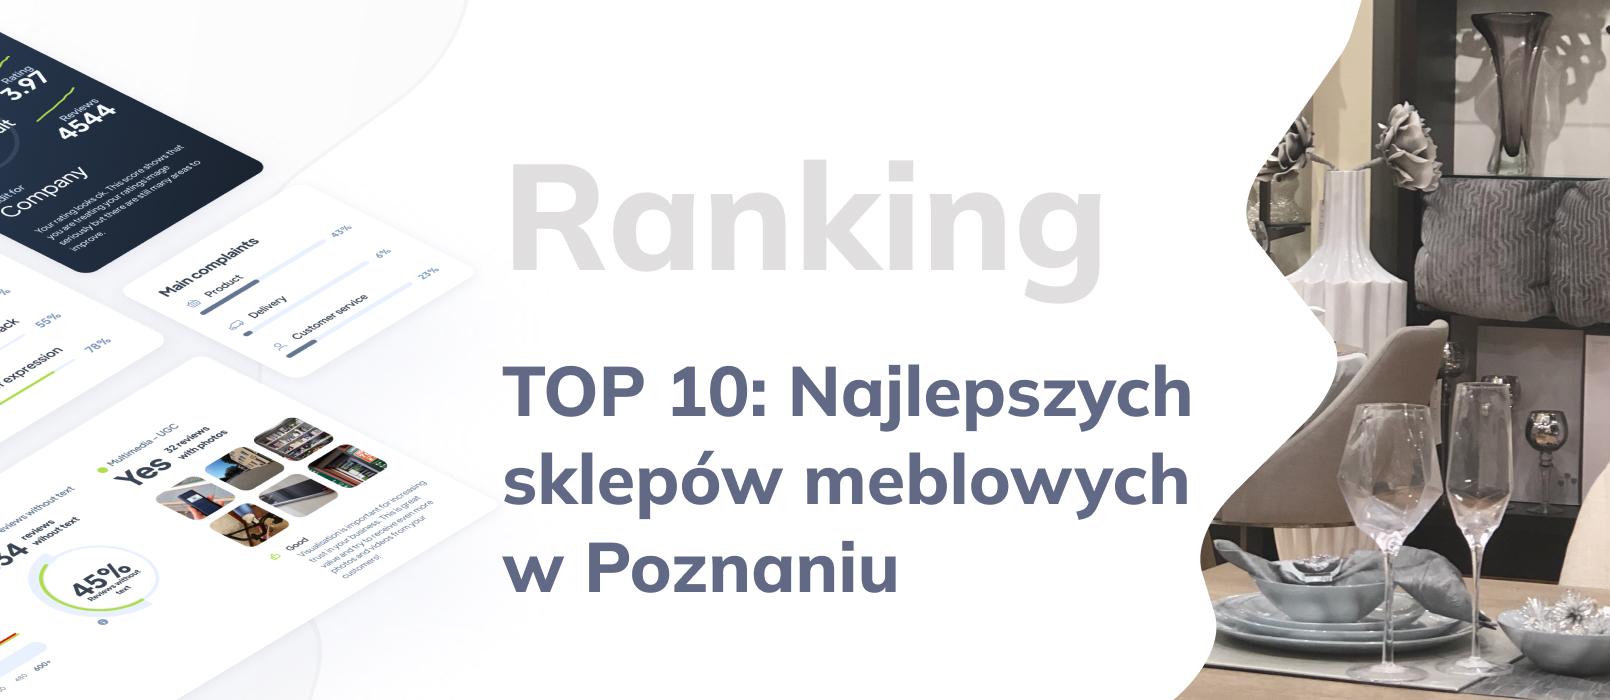 Najlepsze sklepy meblowe w Poznaniu - ranking TOP 10 najlepszych sklepów z meblami w Poznaniu